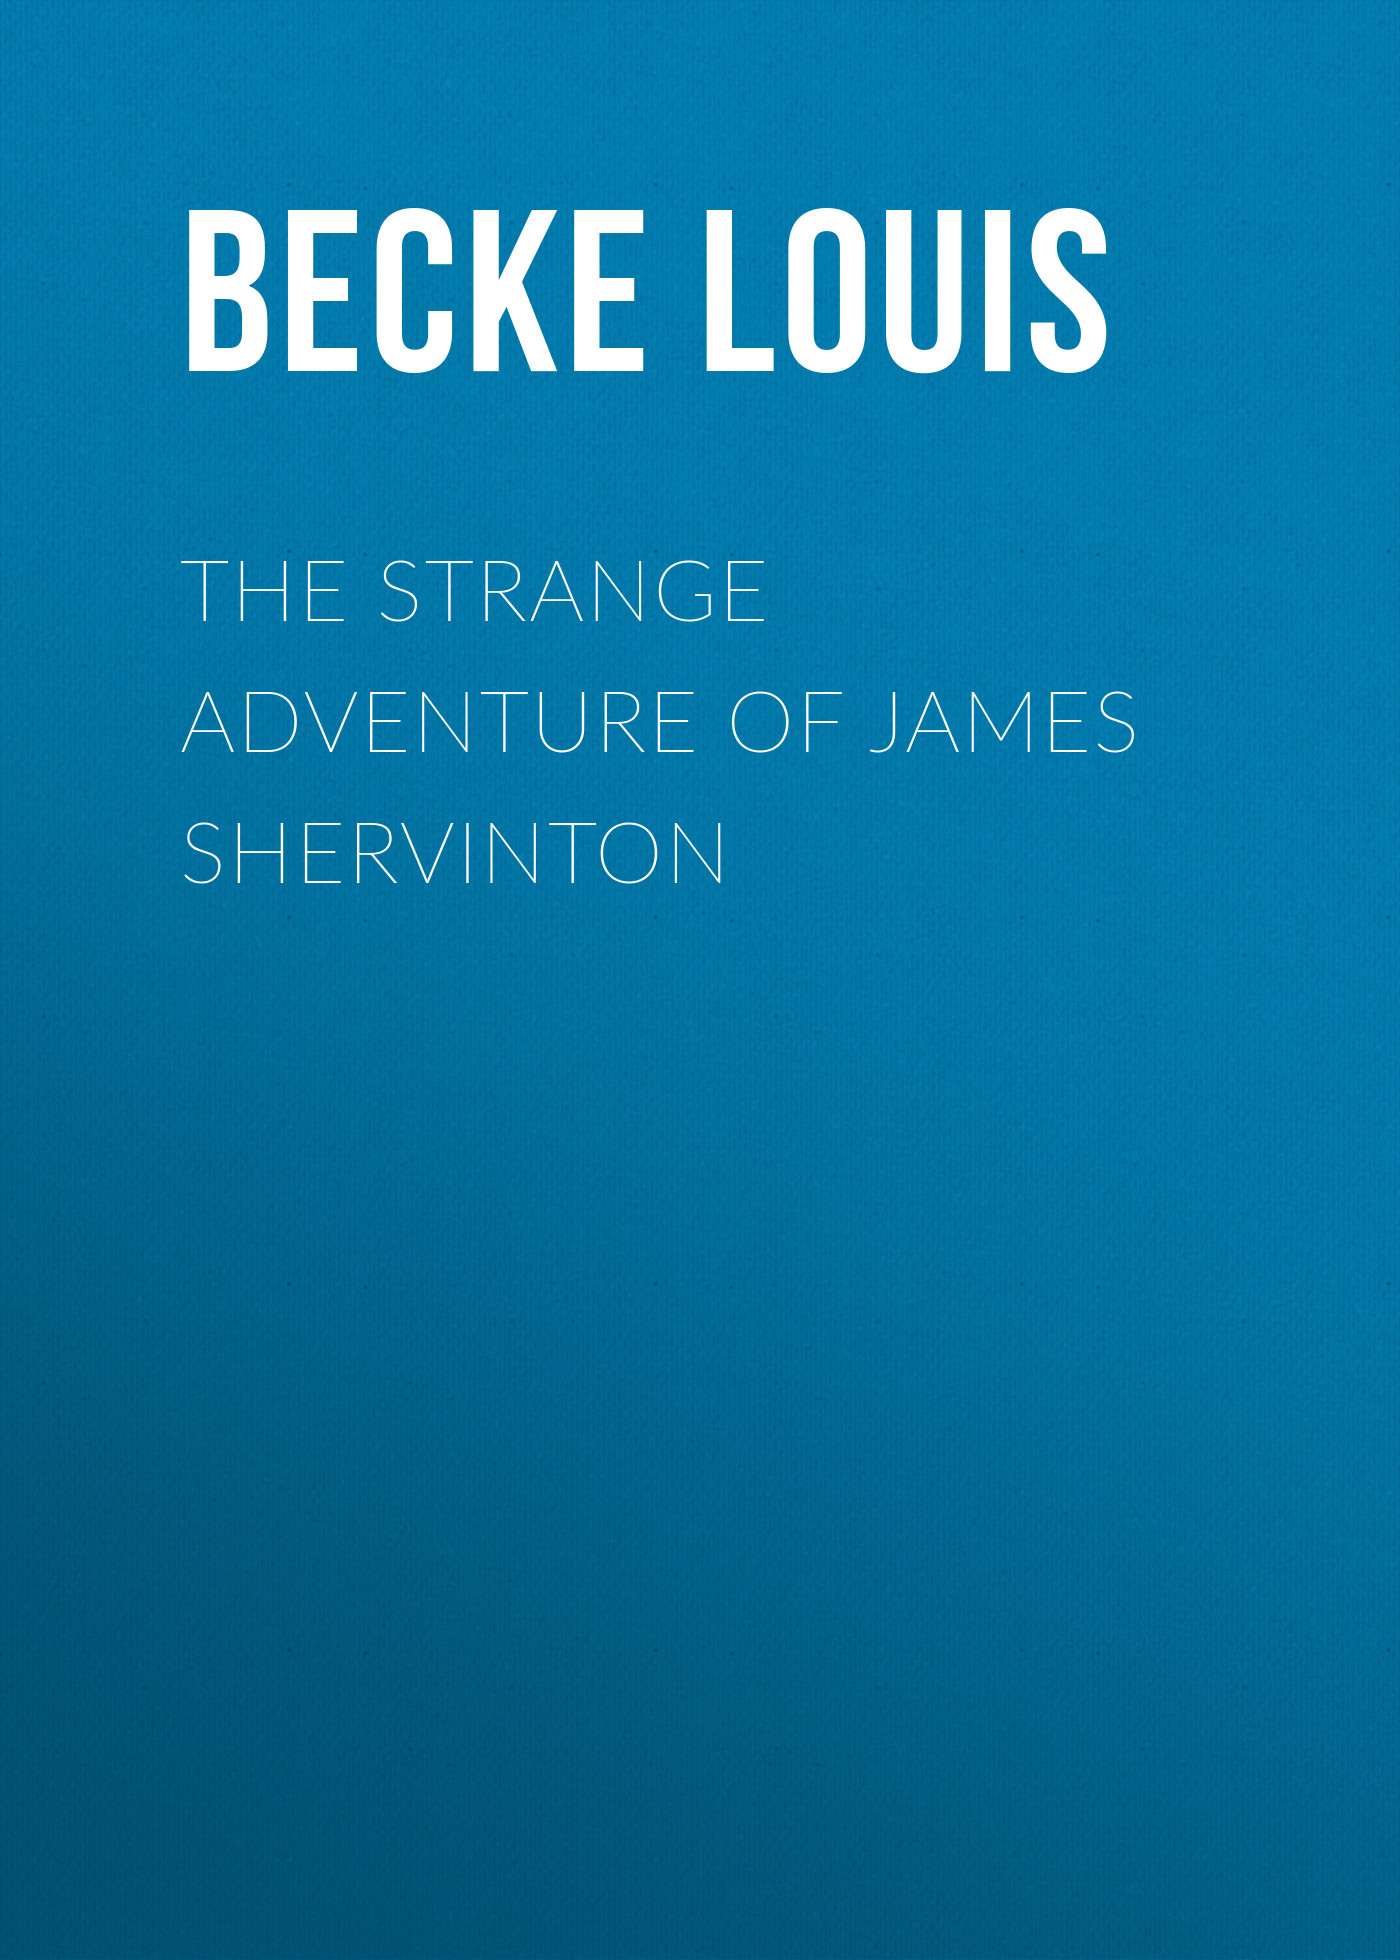 Книга The Strange Adventure Of James Shervinton из серии , созданная Louis Becke, может относится к жанру Зарубежная классика, Литература 19 века, Зарубежная старинная литература. Стоимость электронной книги The Strange Adventure Of James Shervinton с идентификатором 36367094 составляет 0 руб.